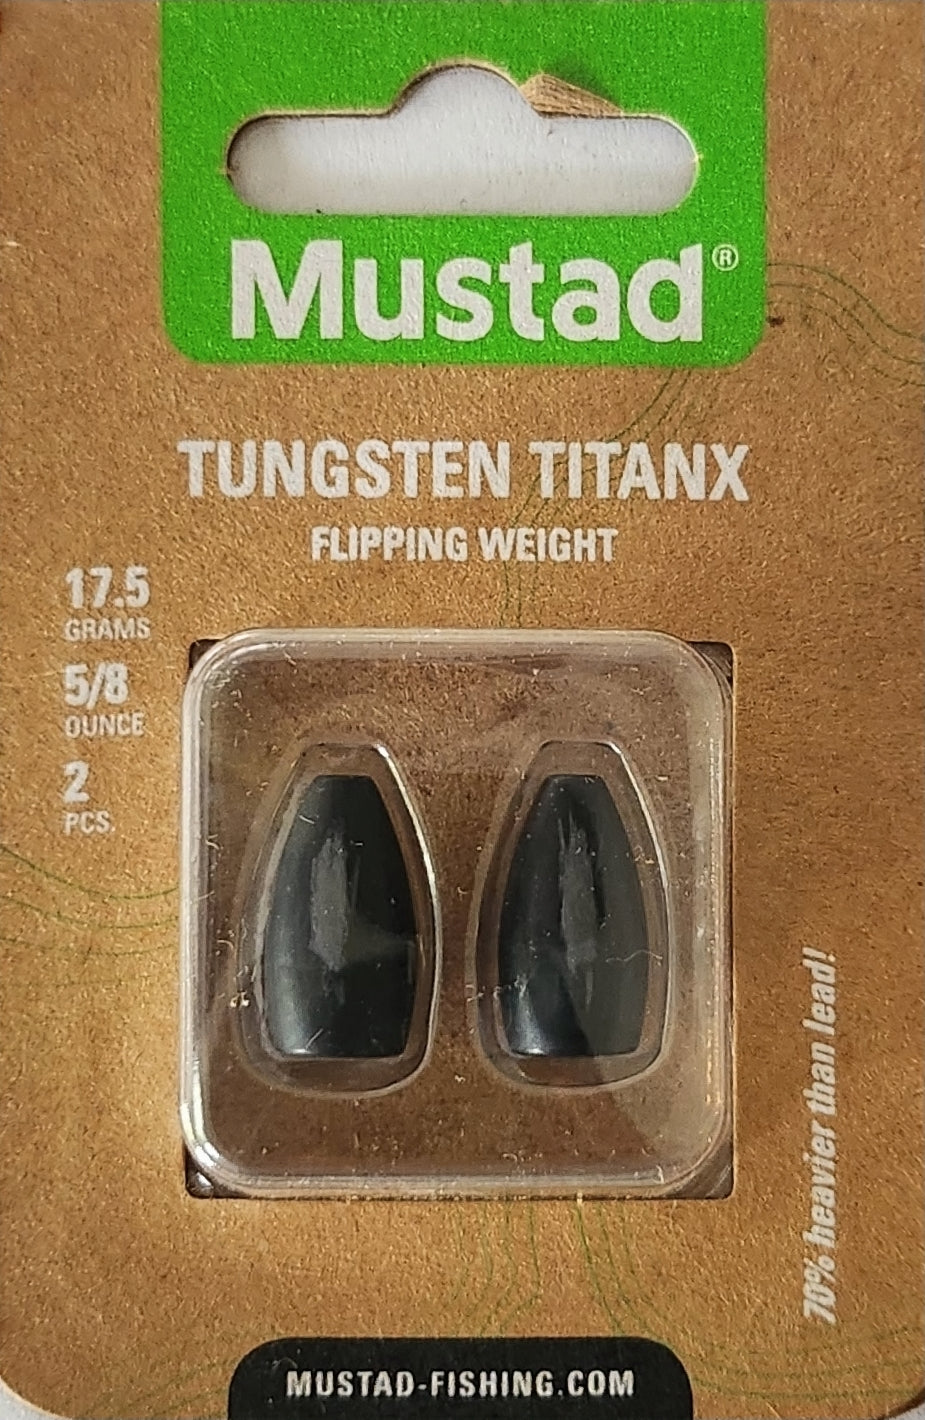 Mustad Tungsten Flipping Weight